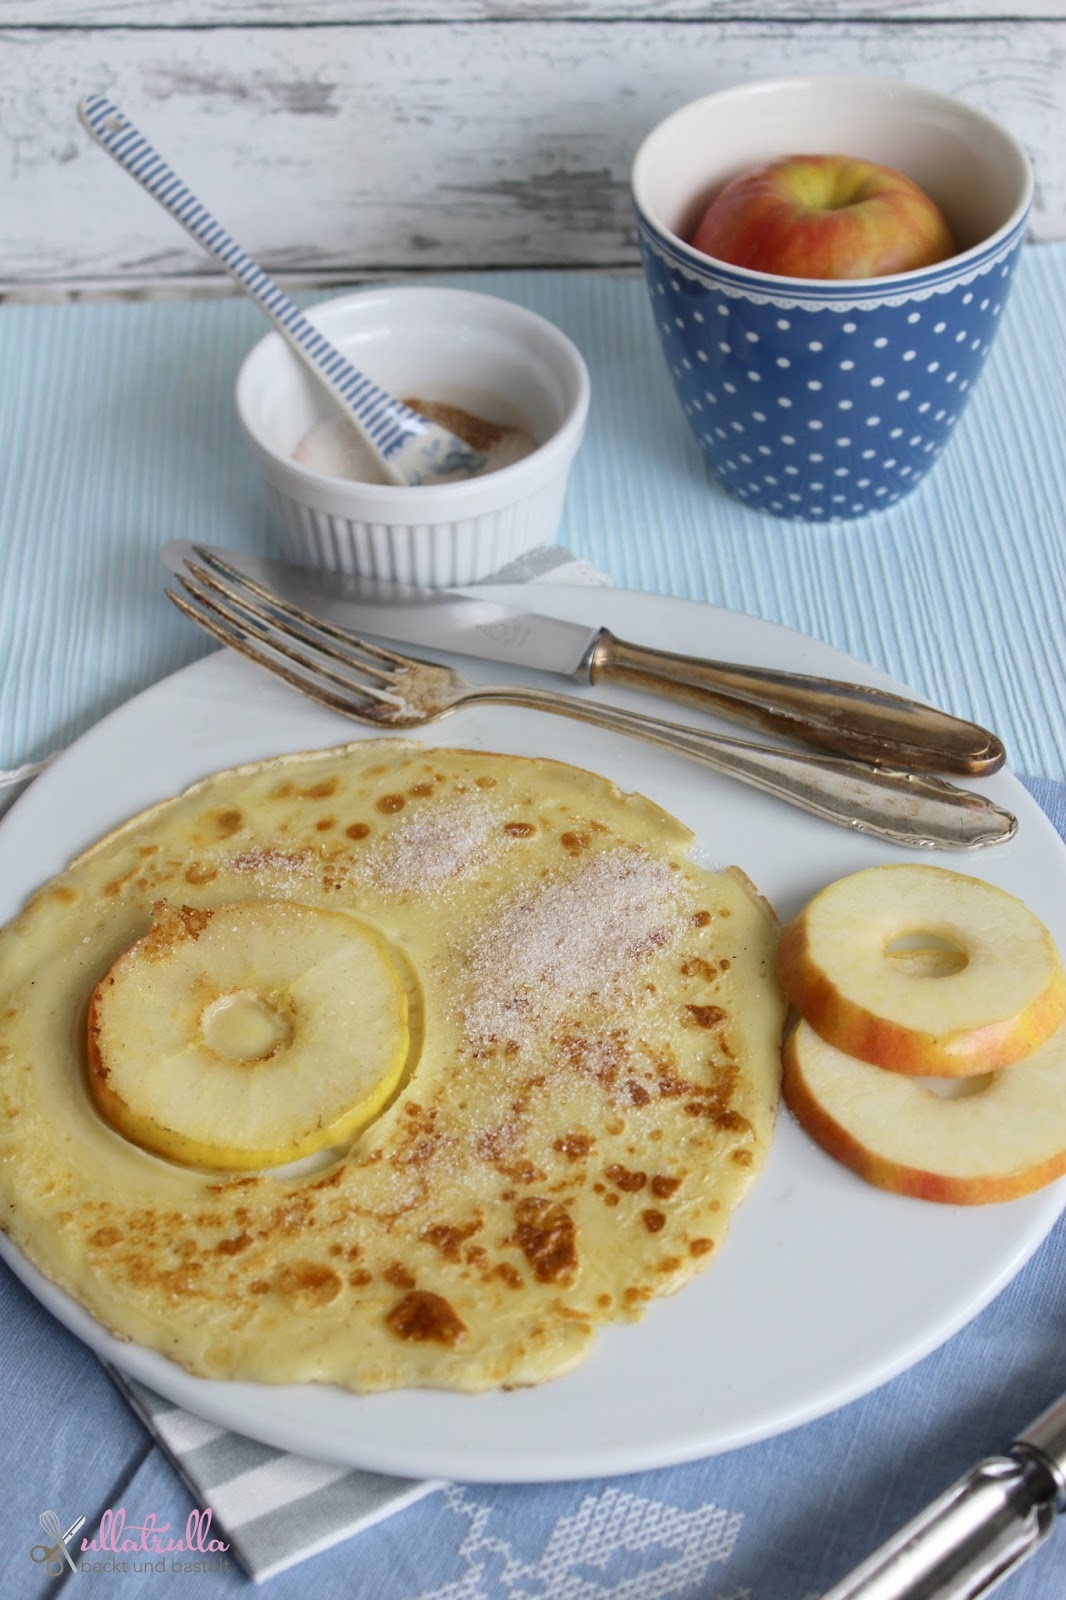 ullatrulla backt und bastelt: Pfannkuchen mit Äpfeln - am liebsten mit ...